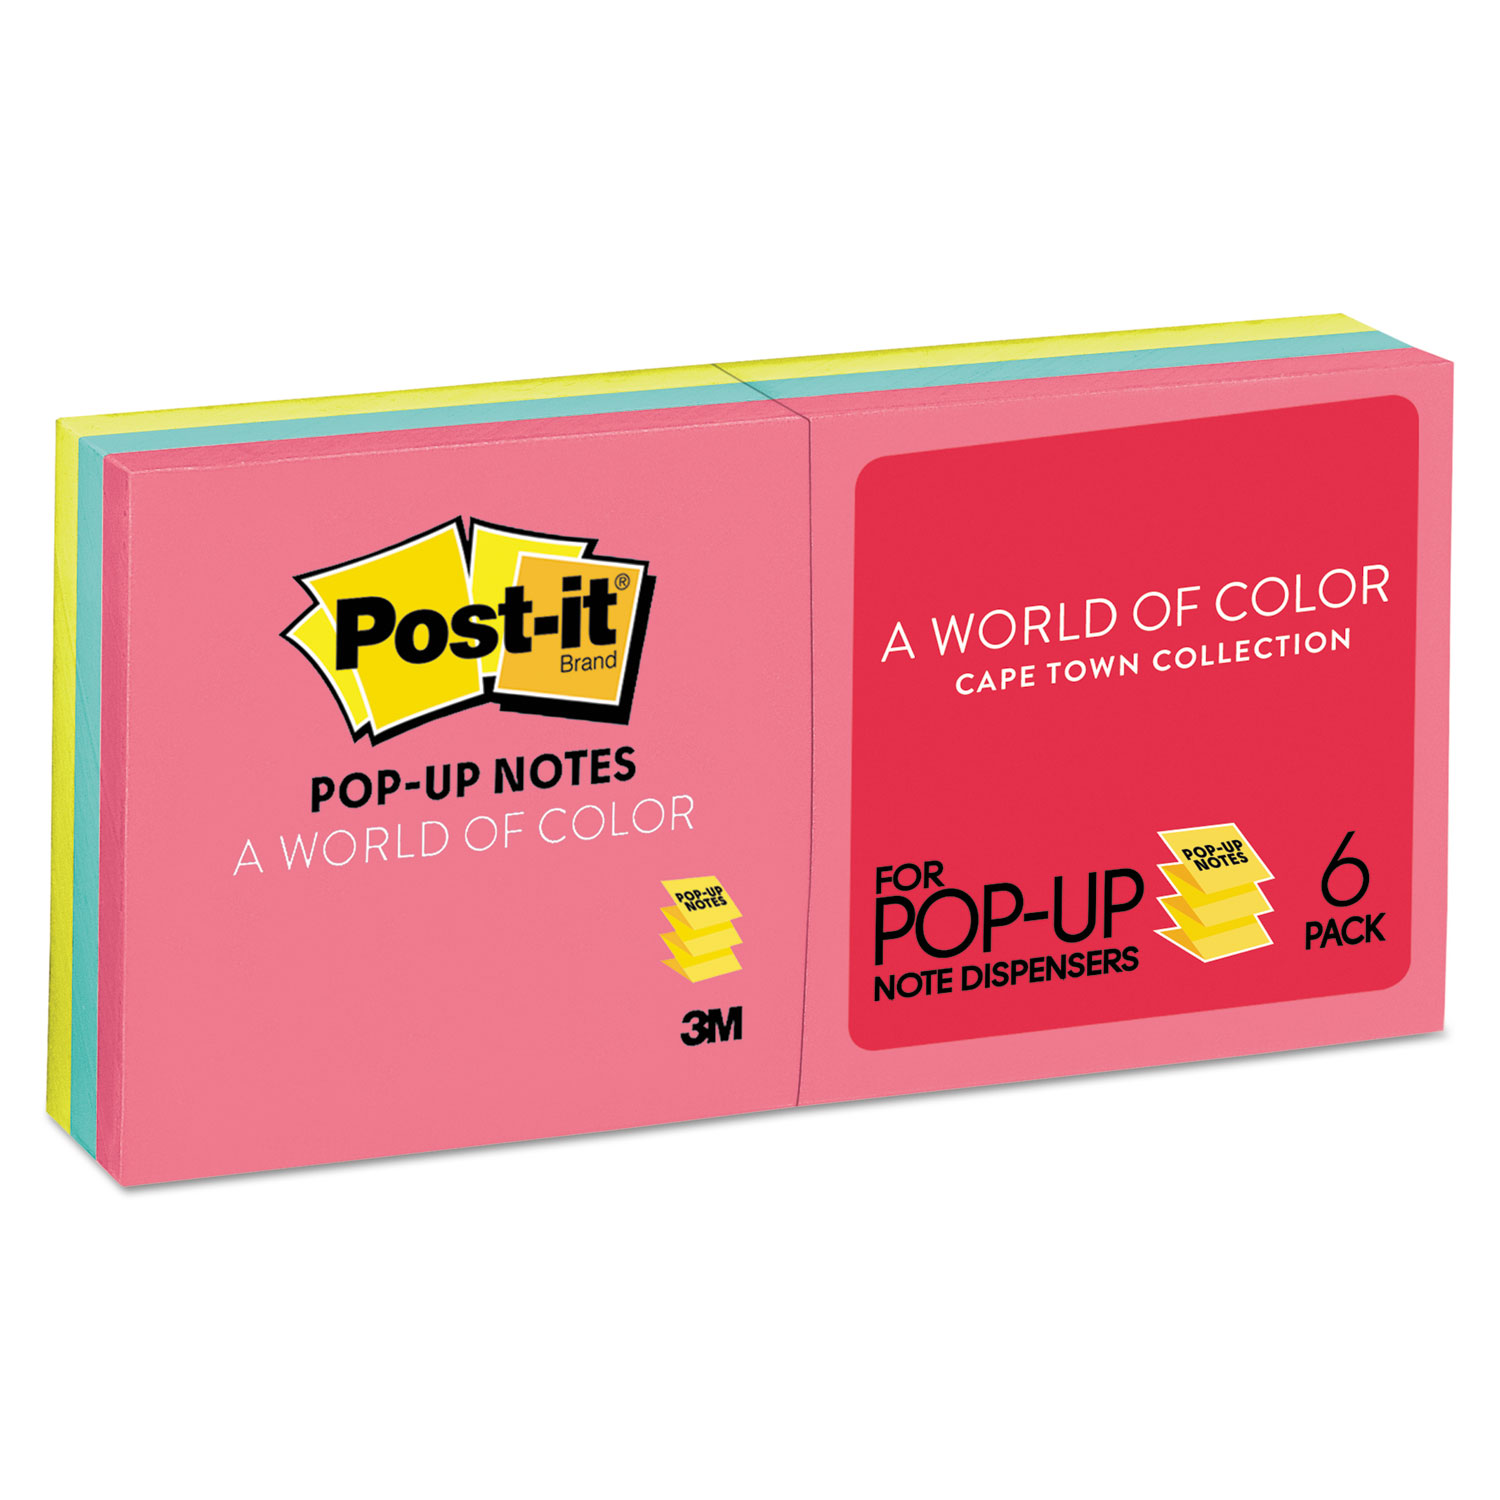  Post-it Pop-up Notes R330-AN Original Pop-up Refill, 3 x 3, Assorted Cape Town Colors, 100-Sheet, 6/Pack (MMMR330AN) 